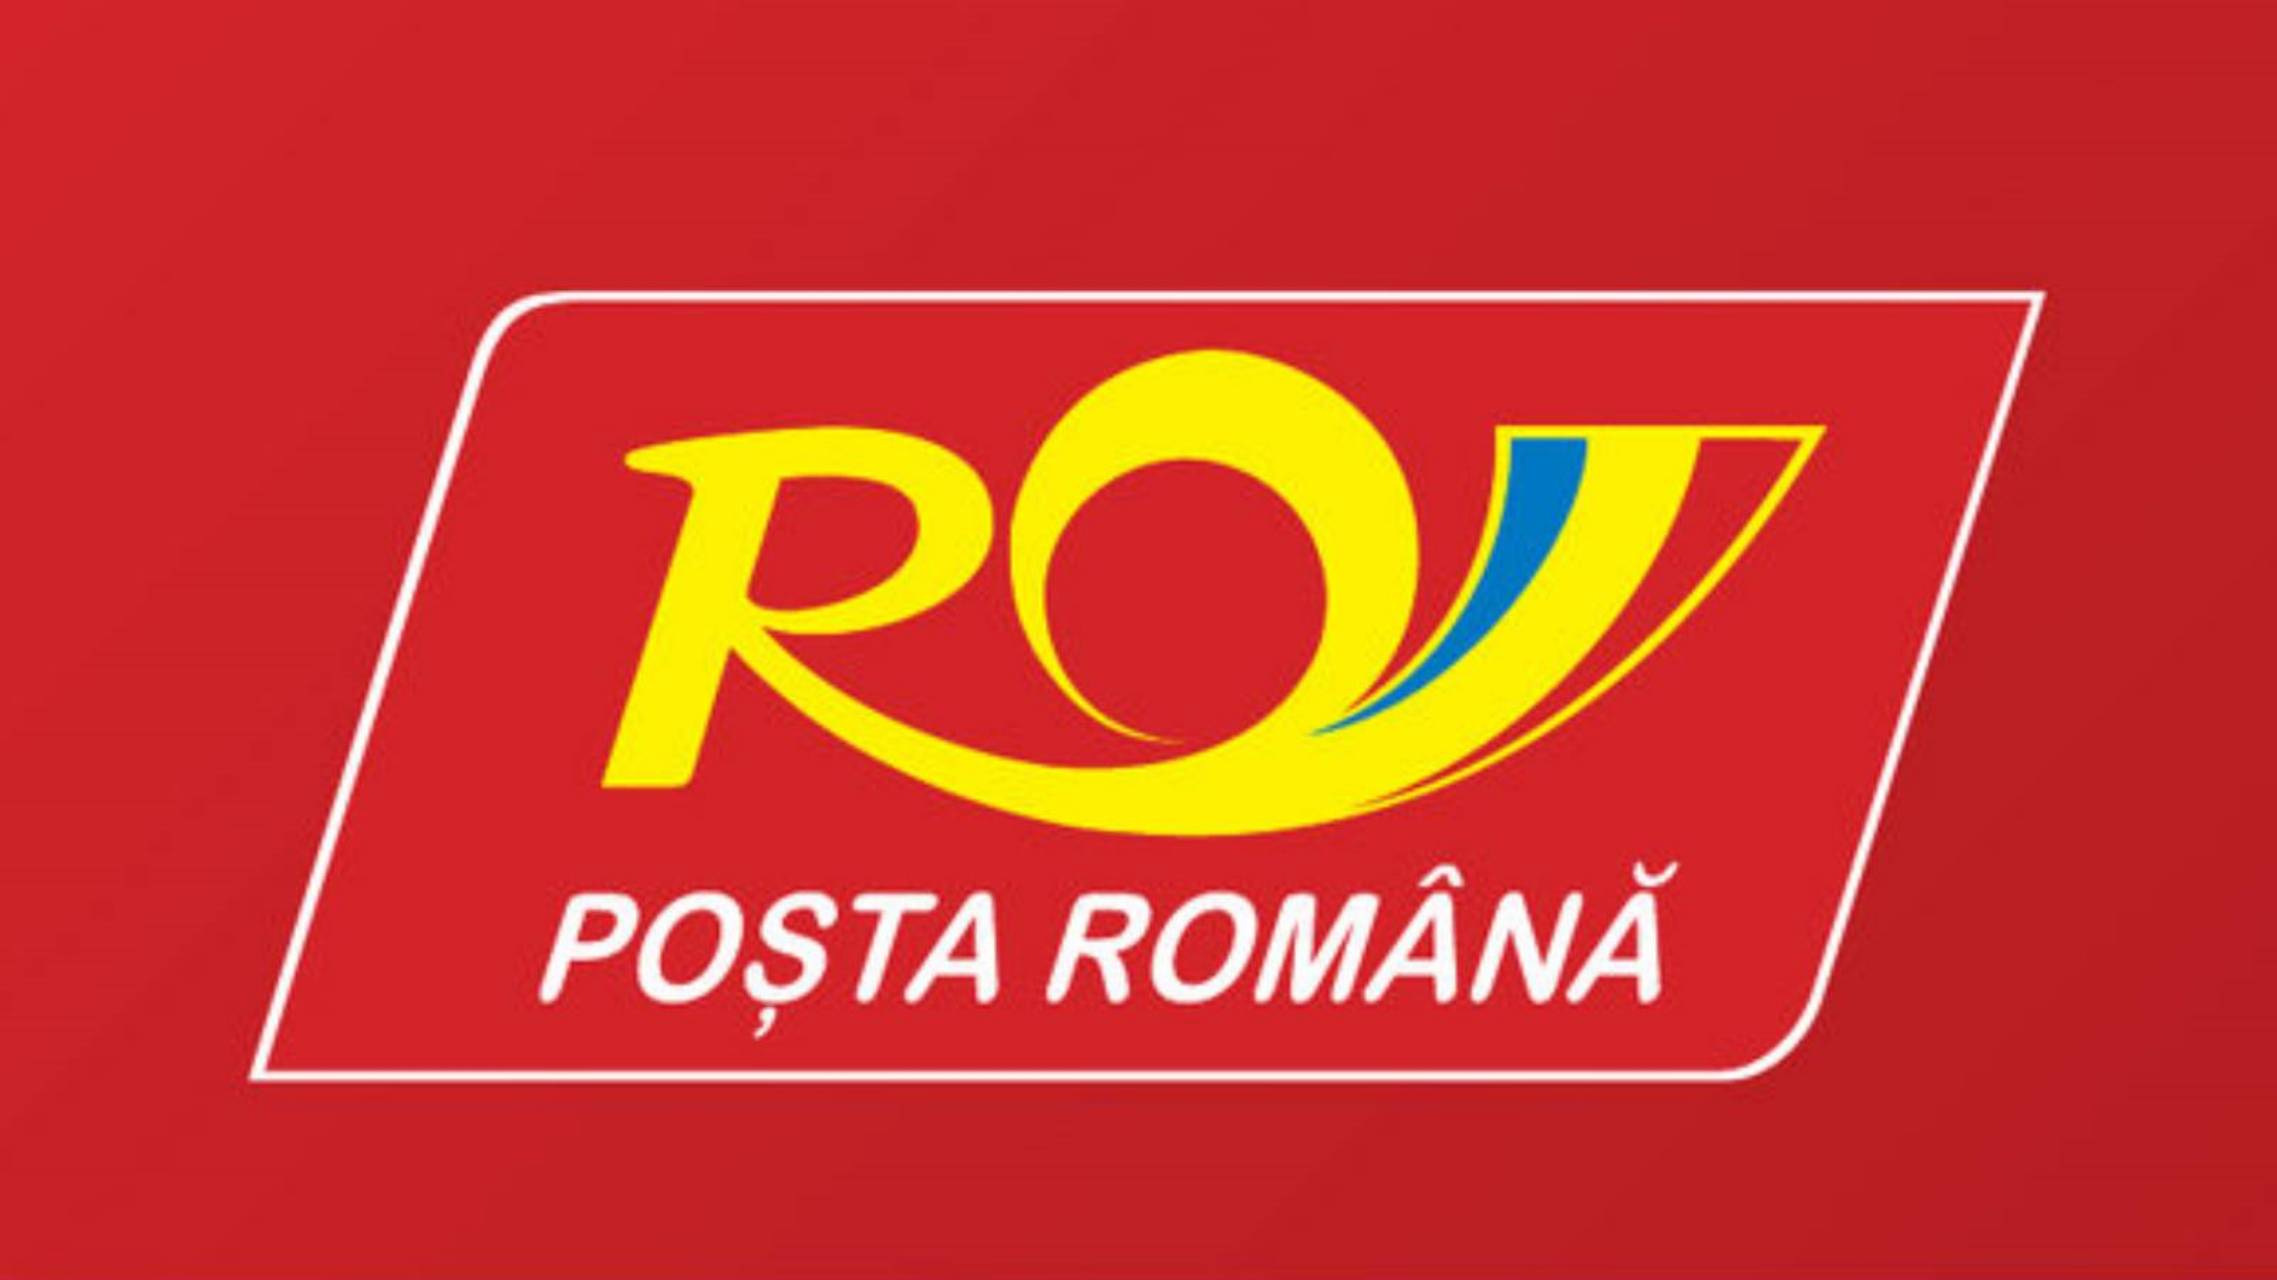 Kleines Paket der rumänischen Post